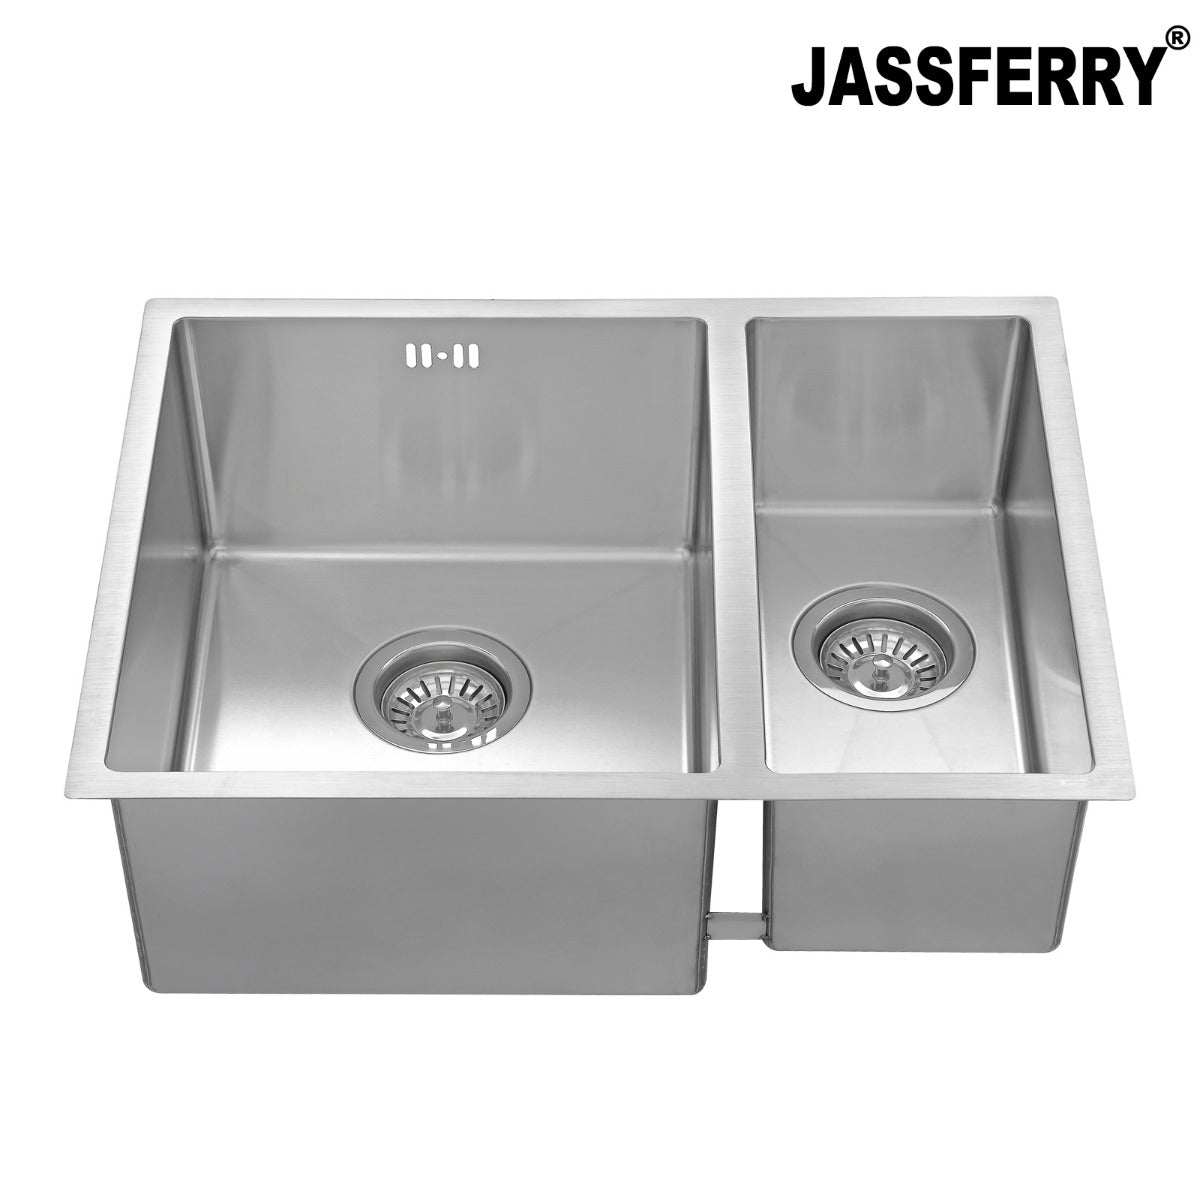 JassferryJASSFERRY Undermount Stainless Steel Kitchen Sink 1.5 Bowl Righthand HalfKitchen Sinks